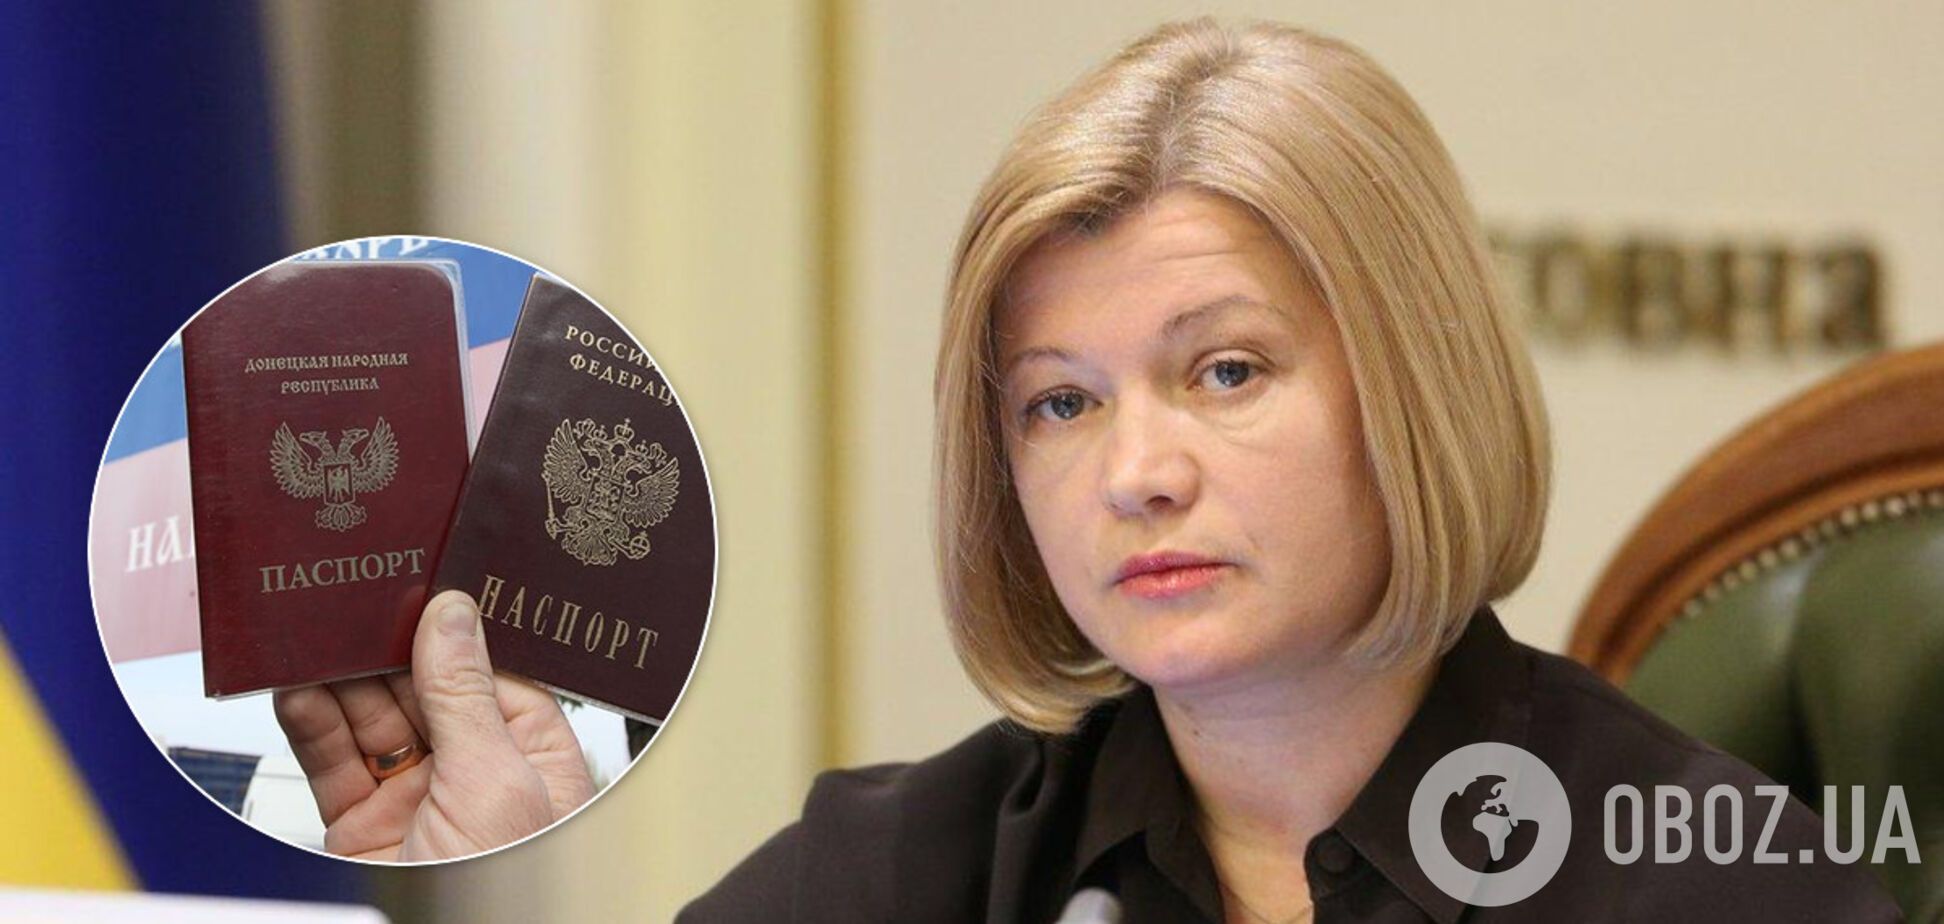 Закон про подвійне громадянство легалізує російські паспорти на Донбасі – Геращенко